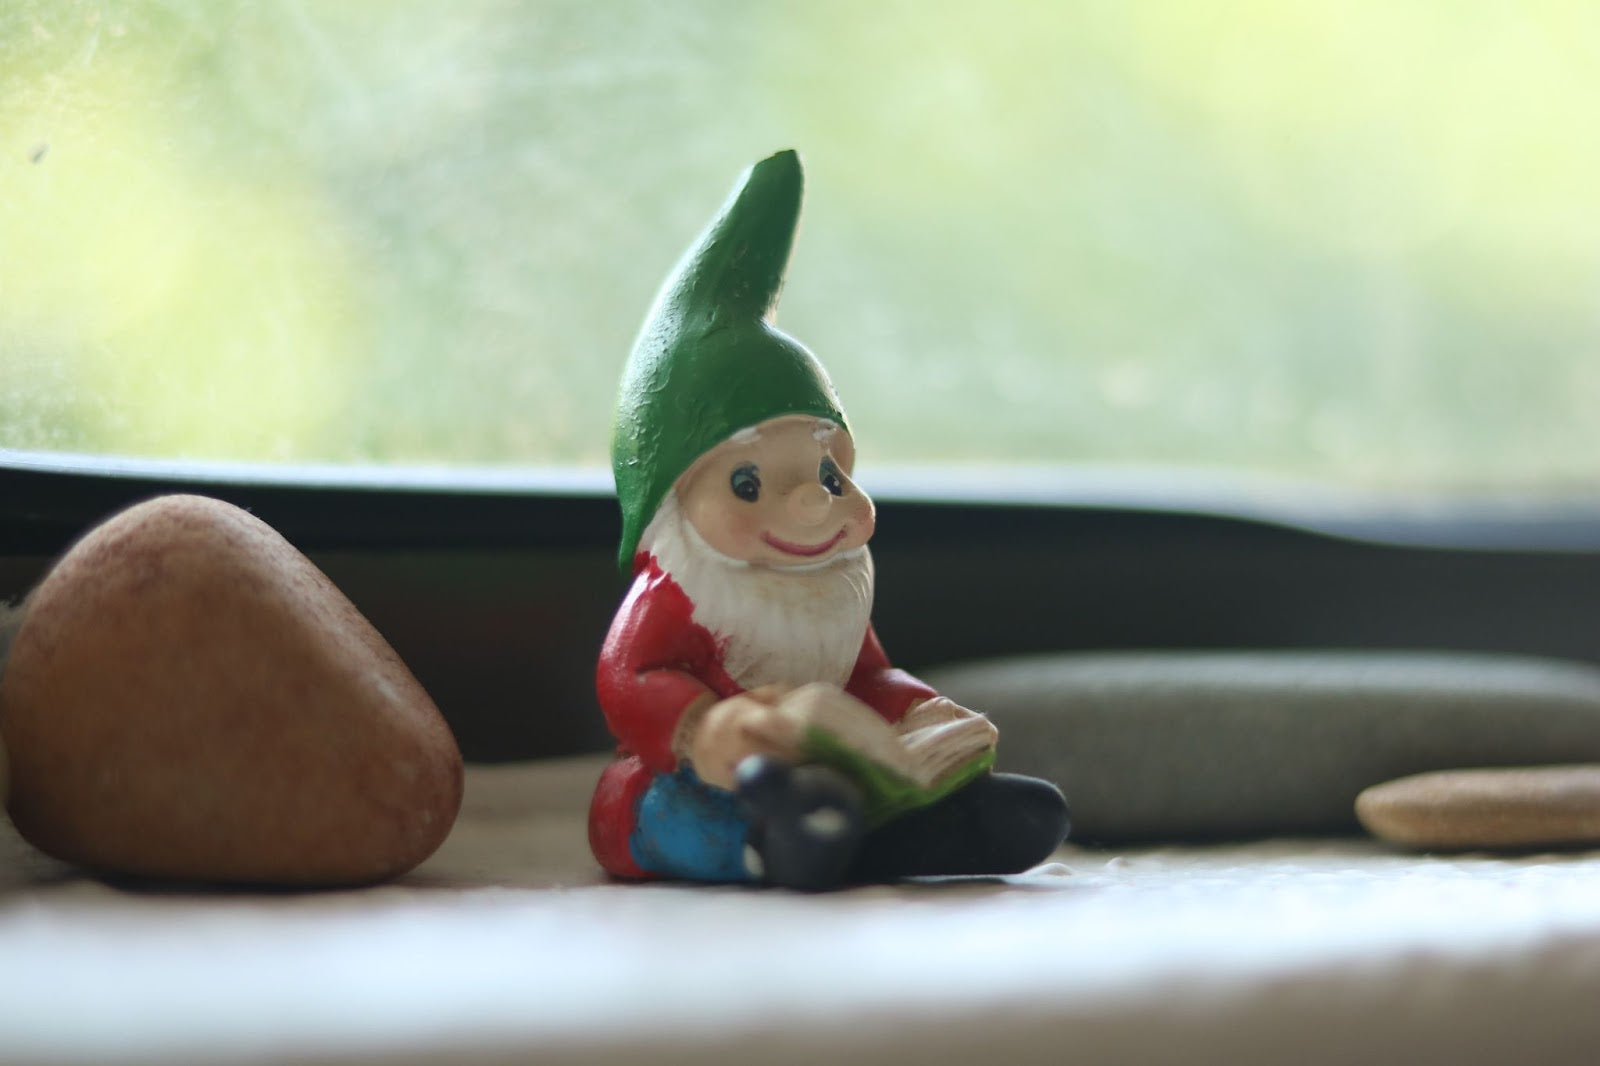 Gnome figurine reading a book